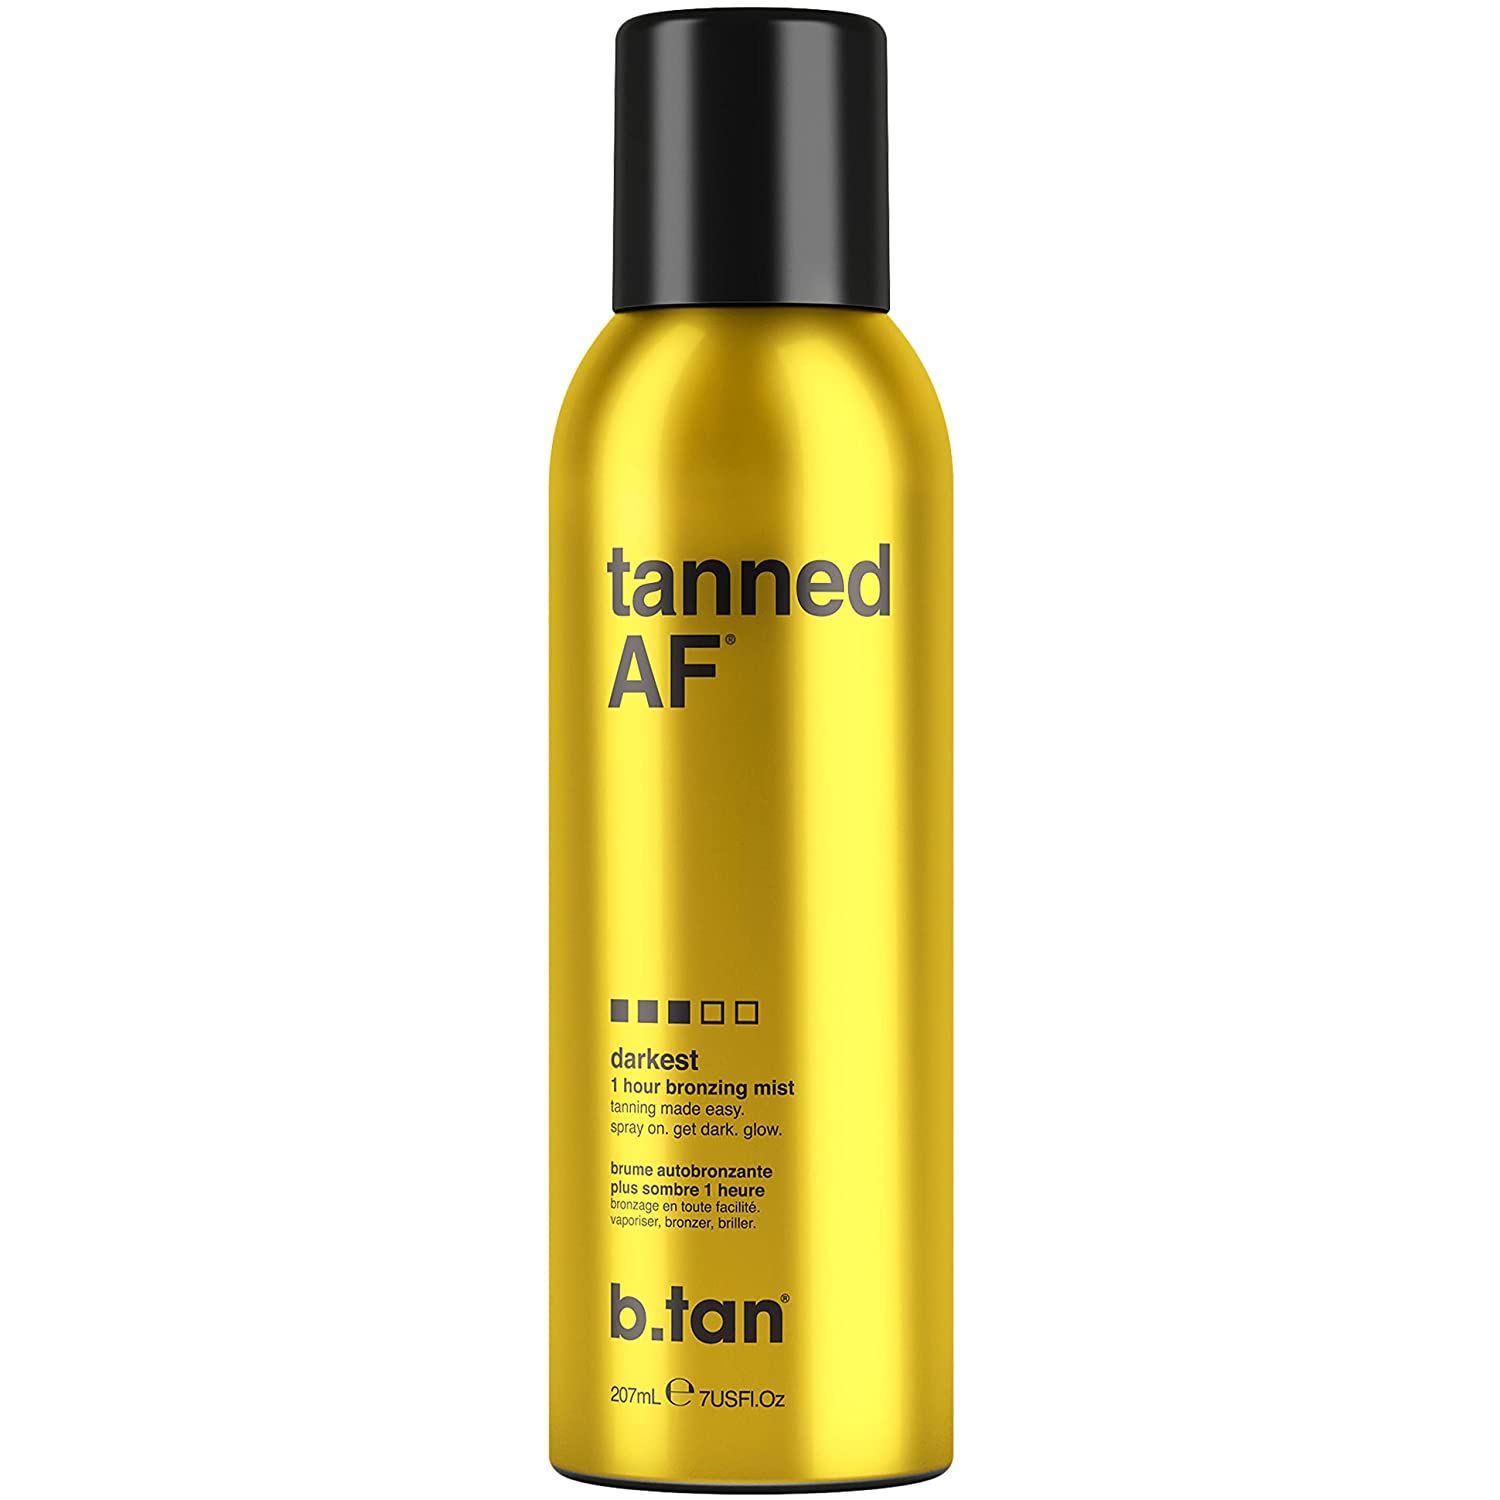 spray tan sf review